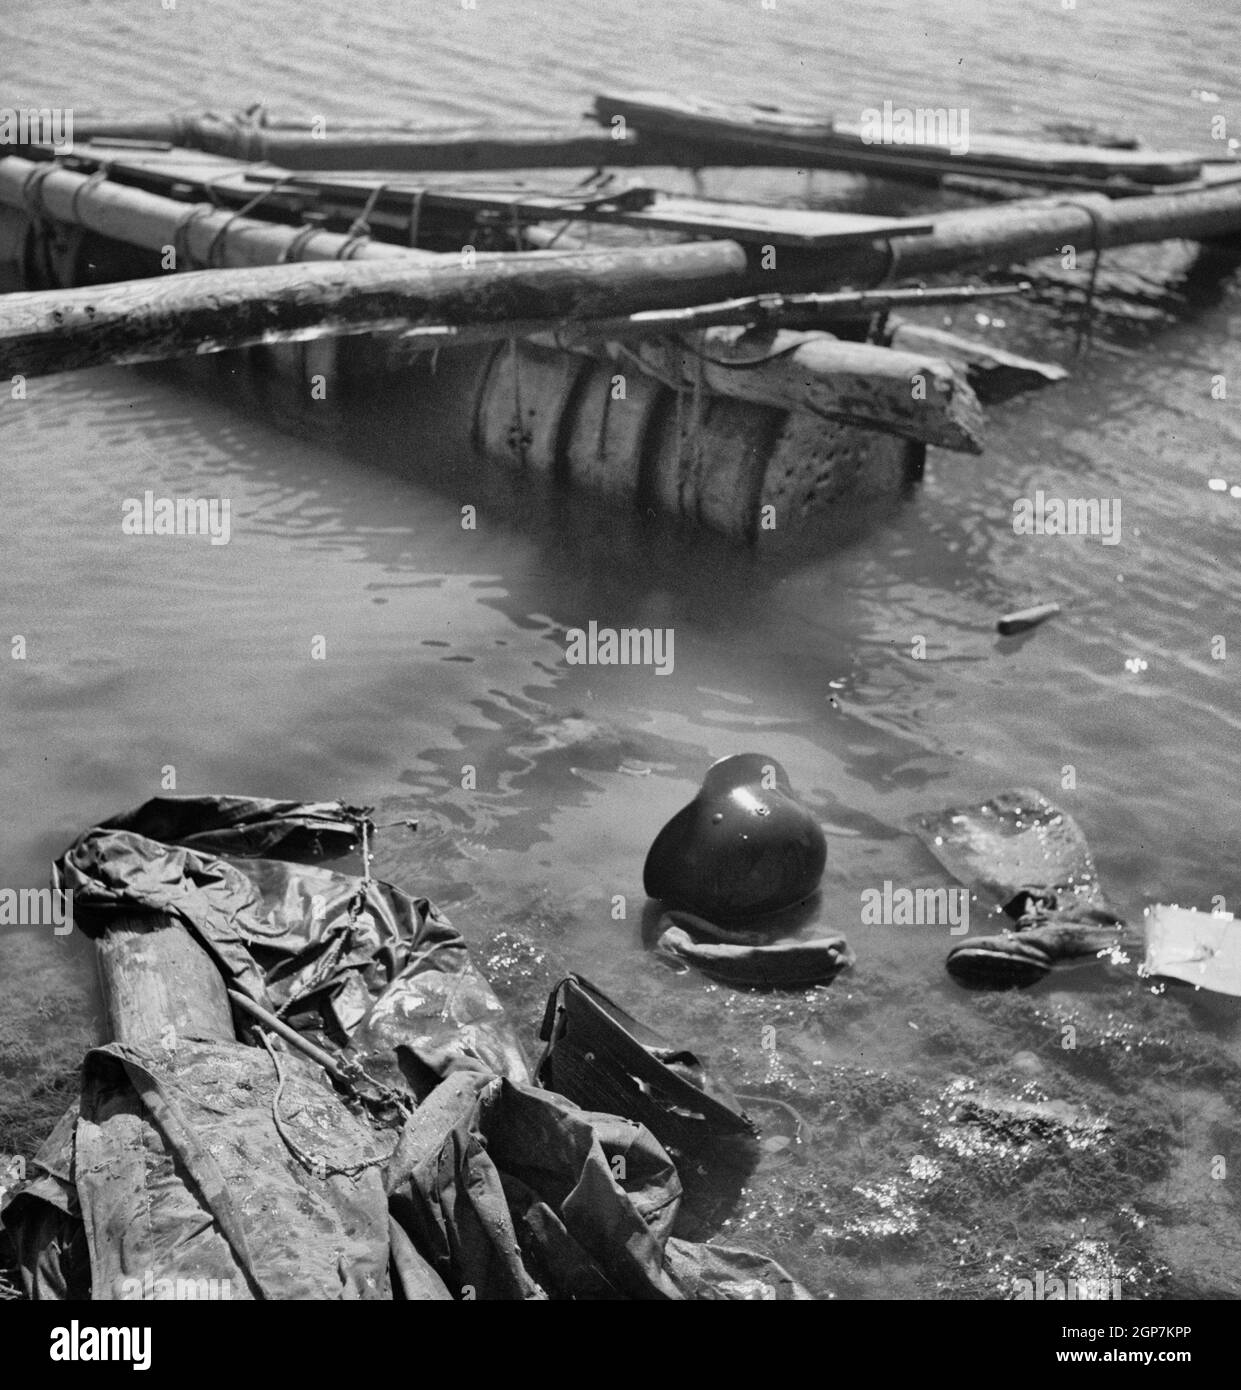 Porto Farina, Tunisie. Un radeau, une chaussure et un casque allemands dans l'eau après que les soldats américains et britanniques aient frustré la tentative d'évacuation des divisions allemandes de panzer 10 et 15 - mai 1943 Banque D'Images